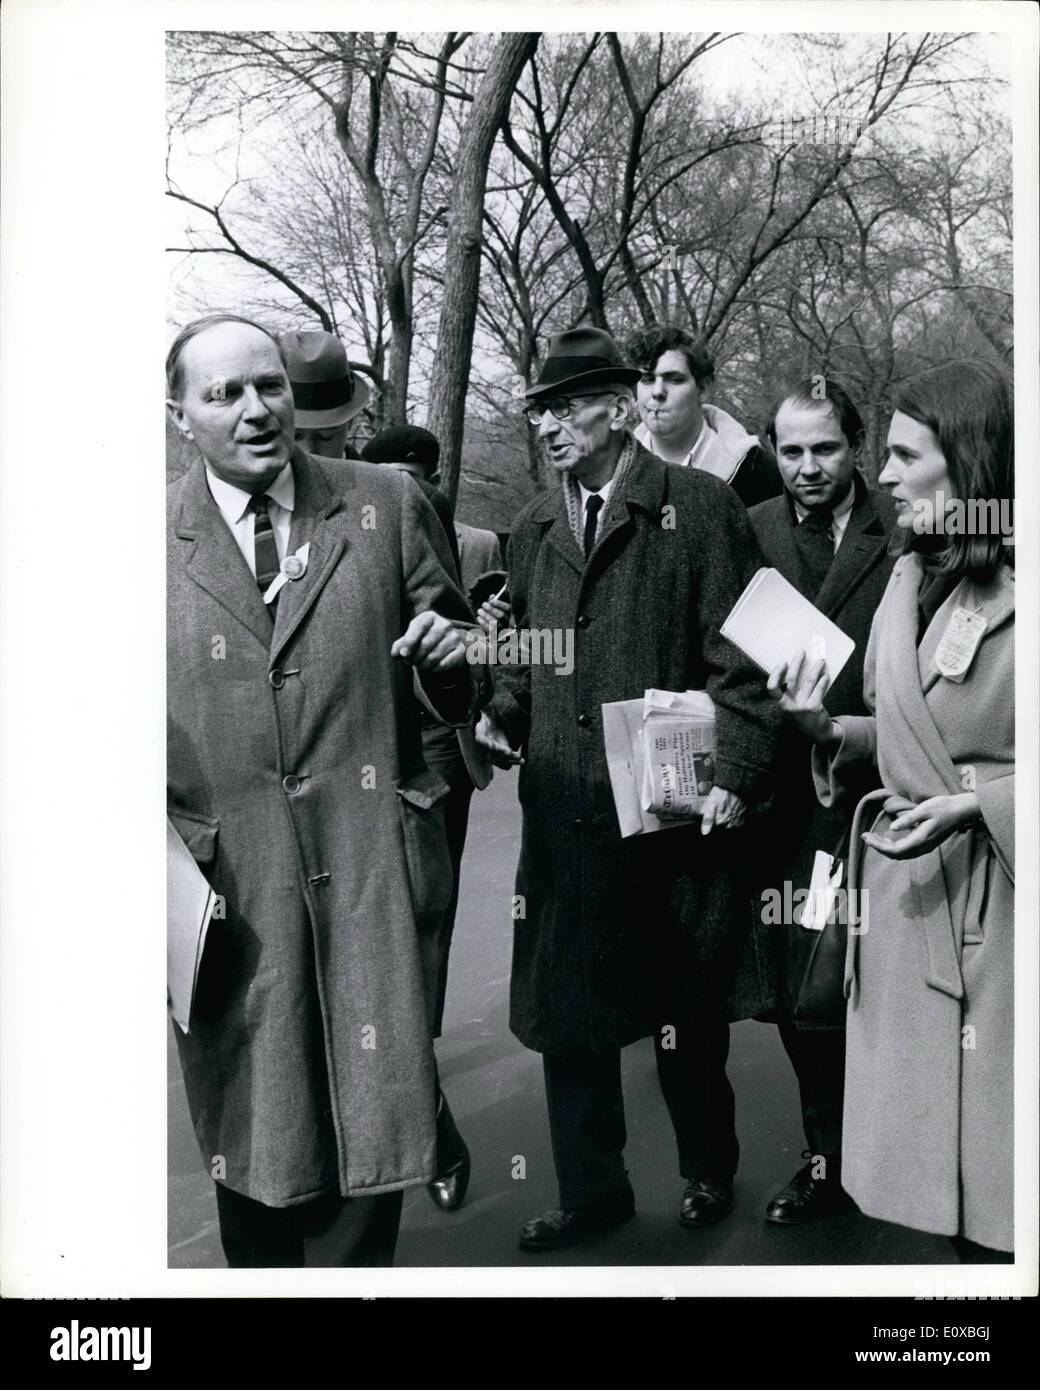 Marzo 03, 1966 - Rev. A.J. Mustee 81 líder pacifista en Anti-Vietnam demostración, Nueva York 3/26/66 Foto de stock